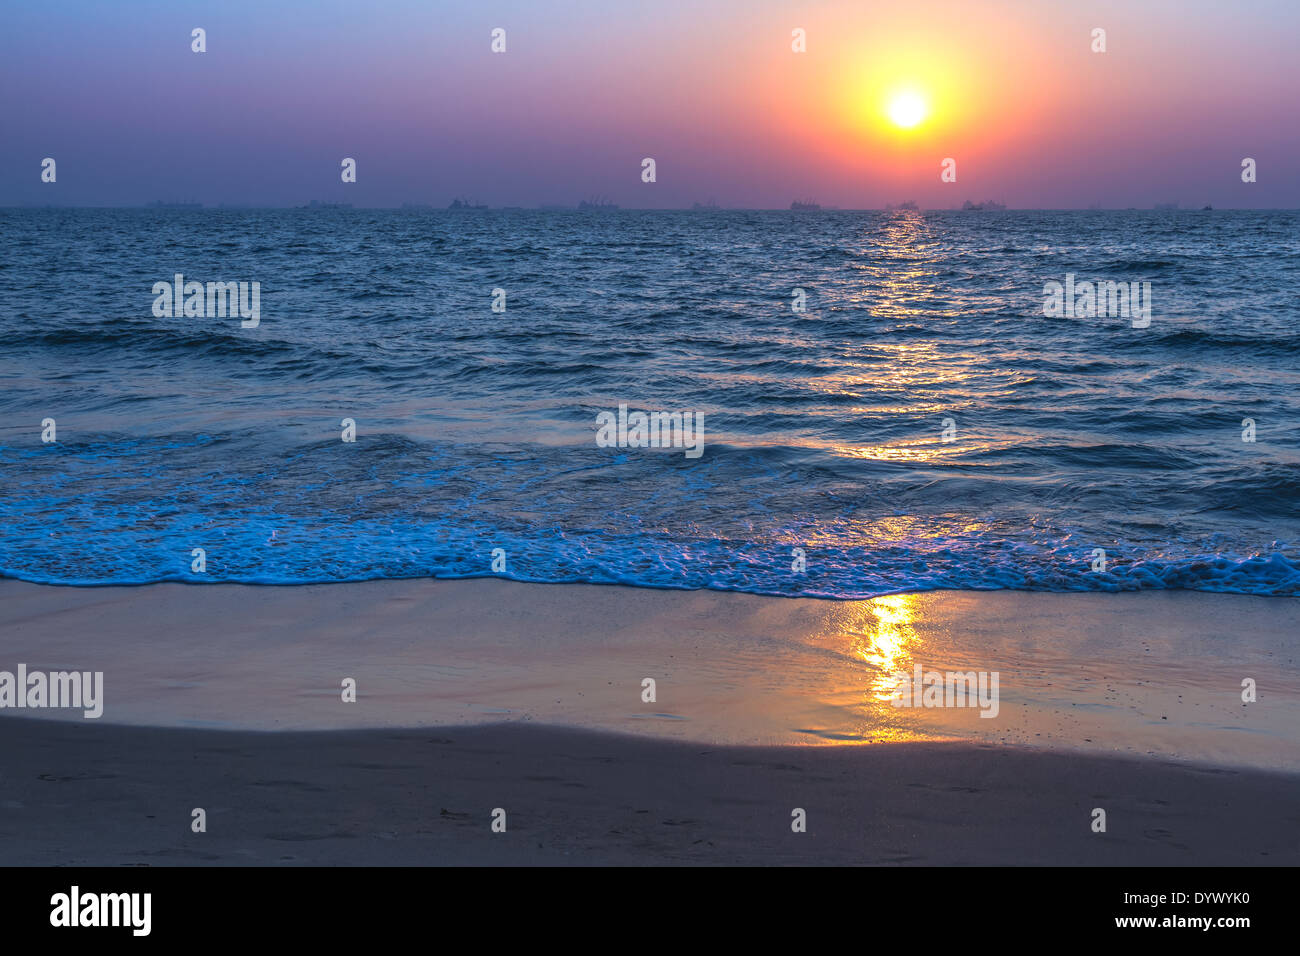 Vista panorámica de la playa de arena de Goa a la hermosa puesta de sol sobre el mar Arábigo. Reflejo del sol sobre la superficie del mar Foto de stock